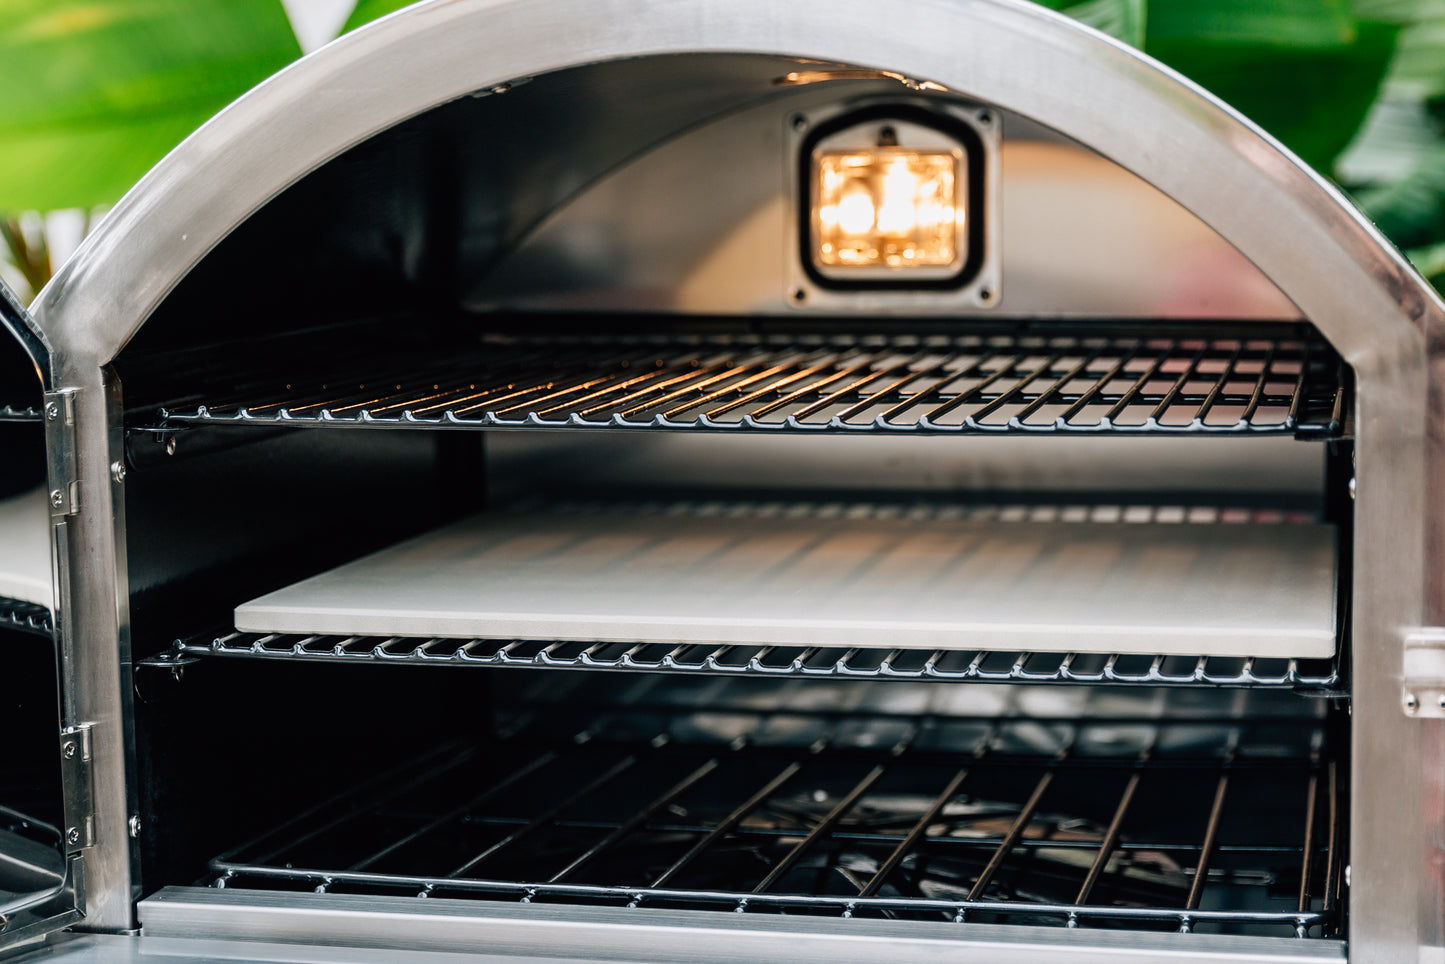 Summerset Countertop / Built In Pizza Oven - Propane